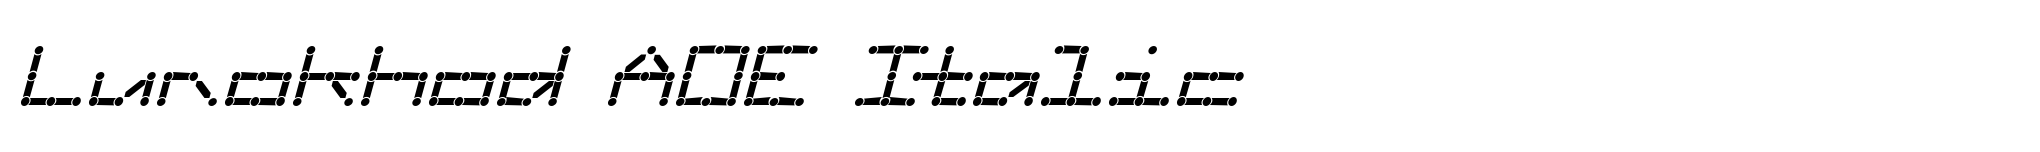 Lunokhod AOE Italic image